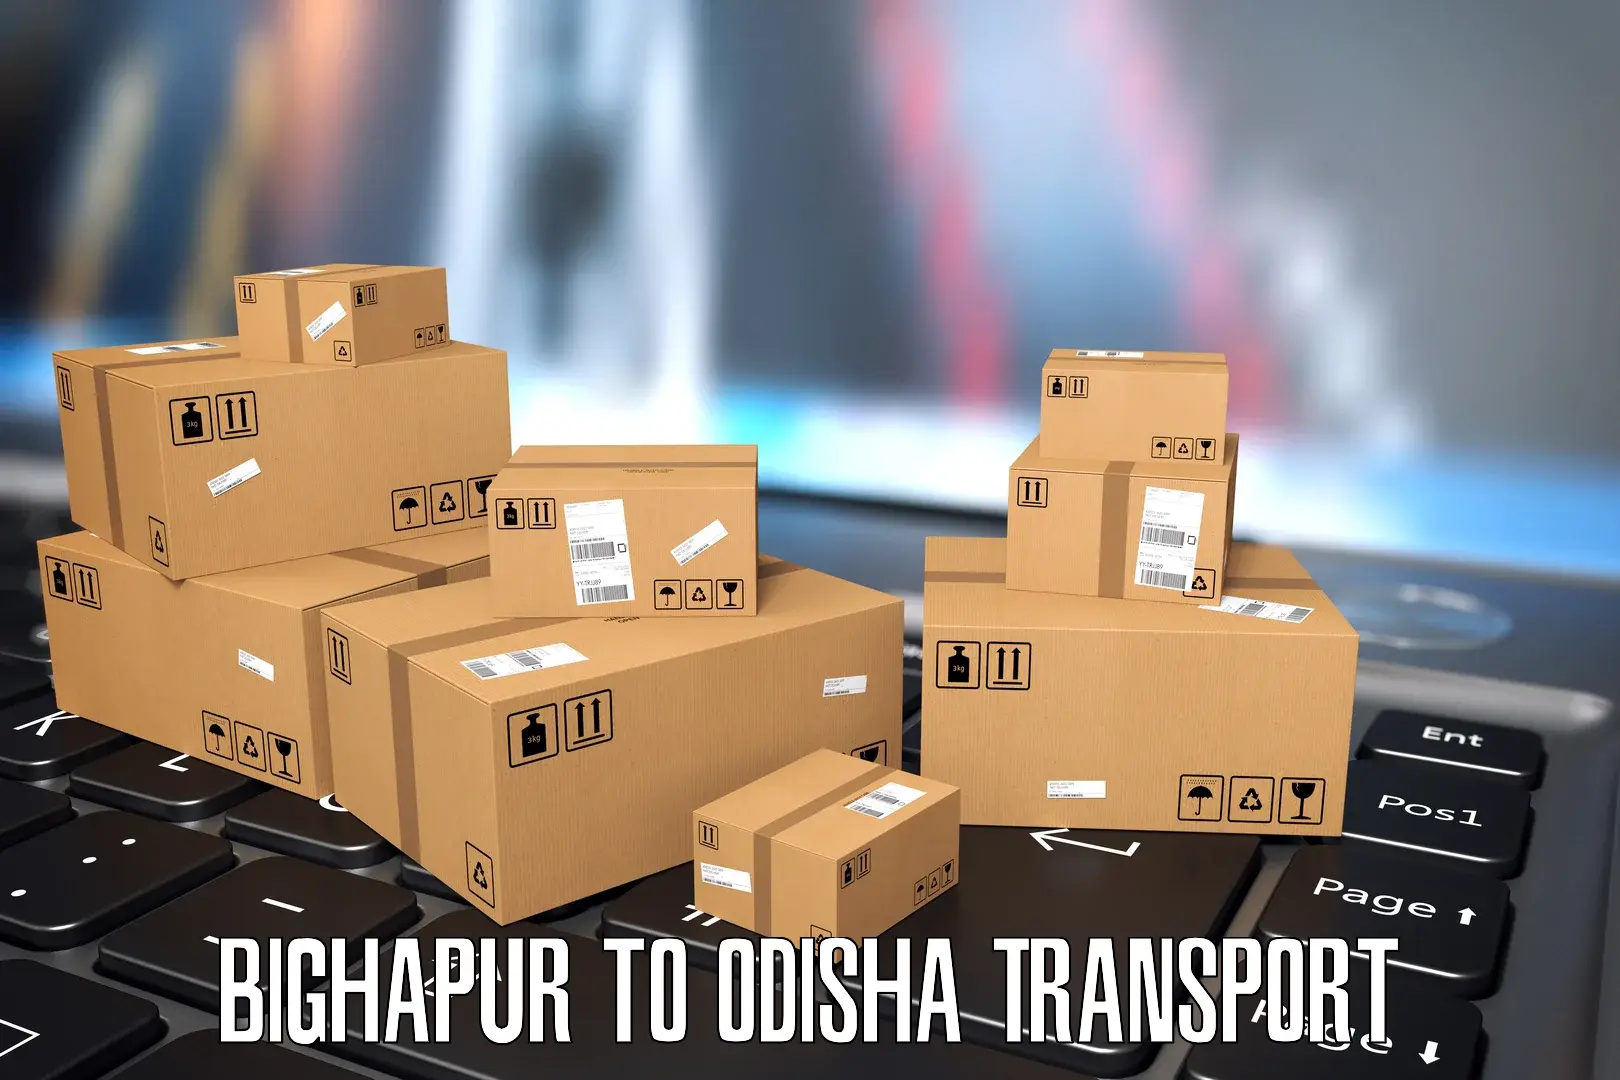 Furniture transport service Bighapur to Bhuban